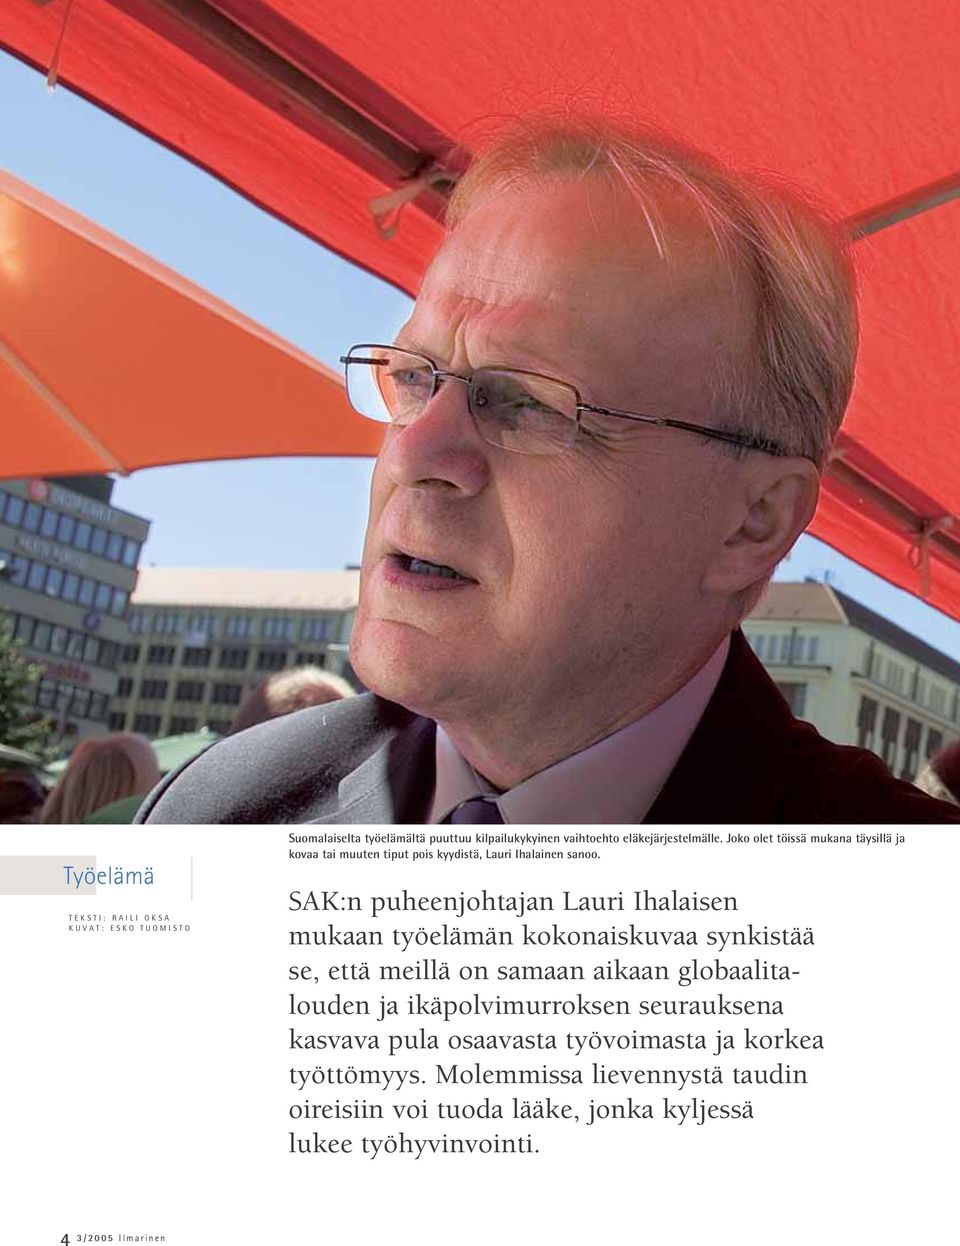 SAK:n puheenjohtajan Lauri Ihalaisen mukaan työelämän kokonaiskuvaa synkistää se, että meillä on samaan aikaan globaalitalouden ja